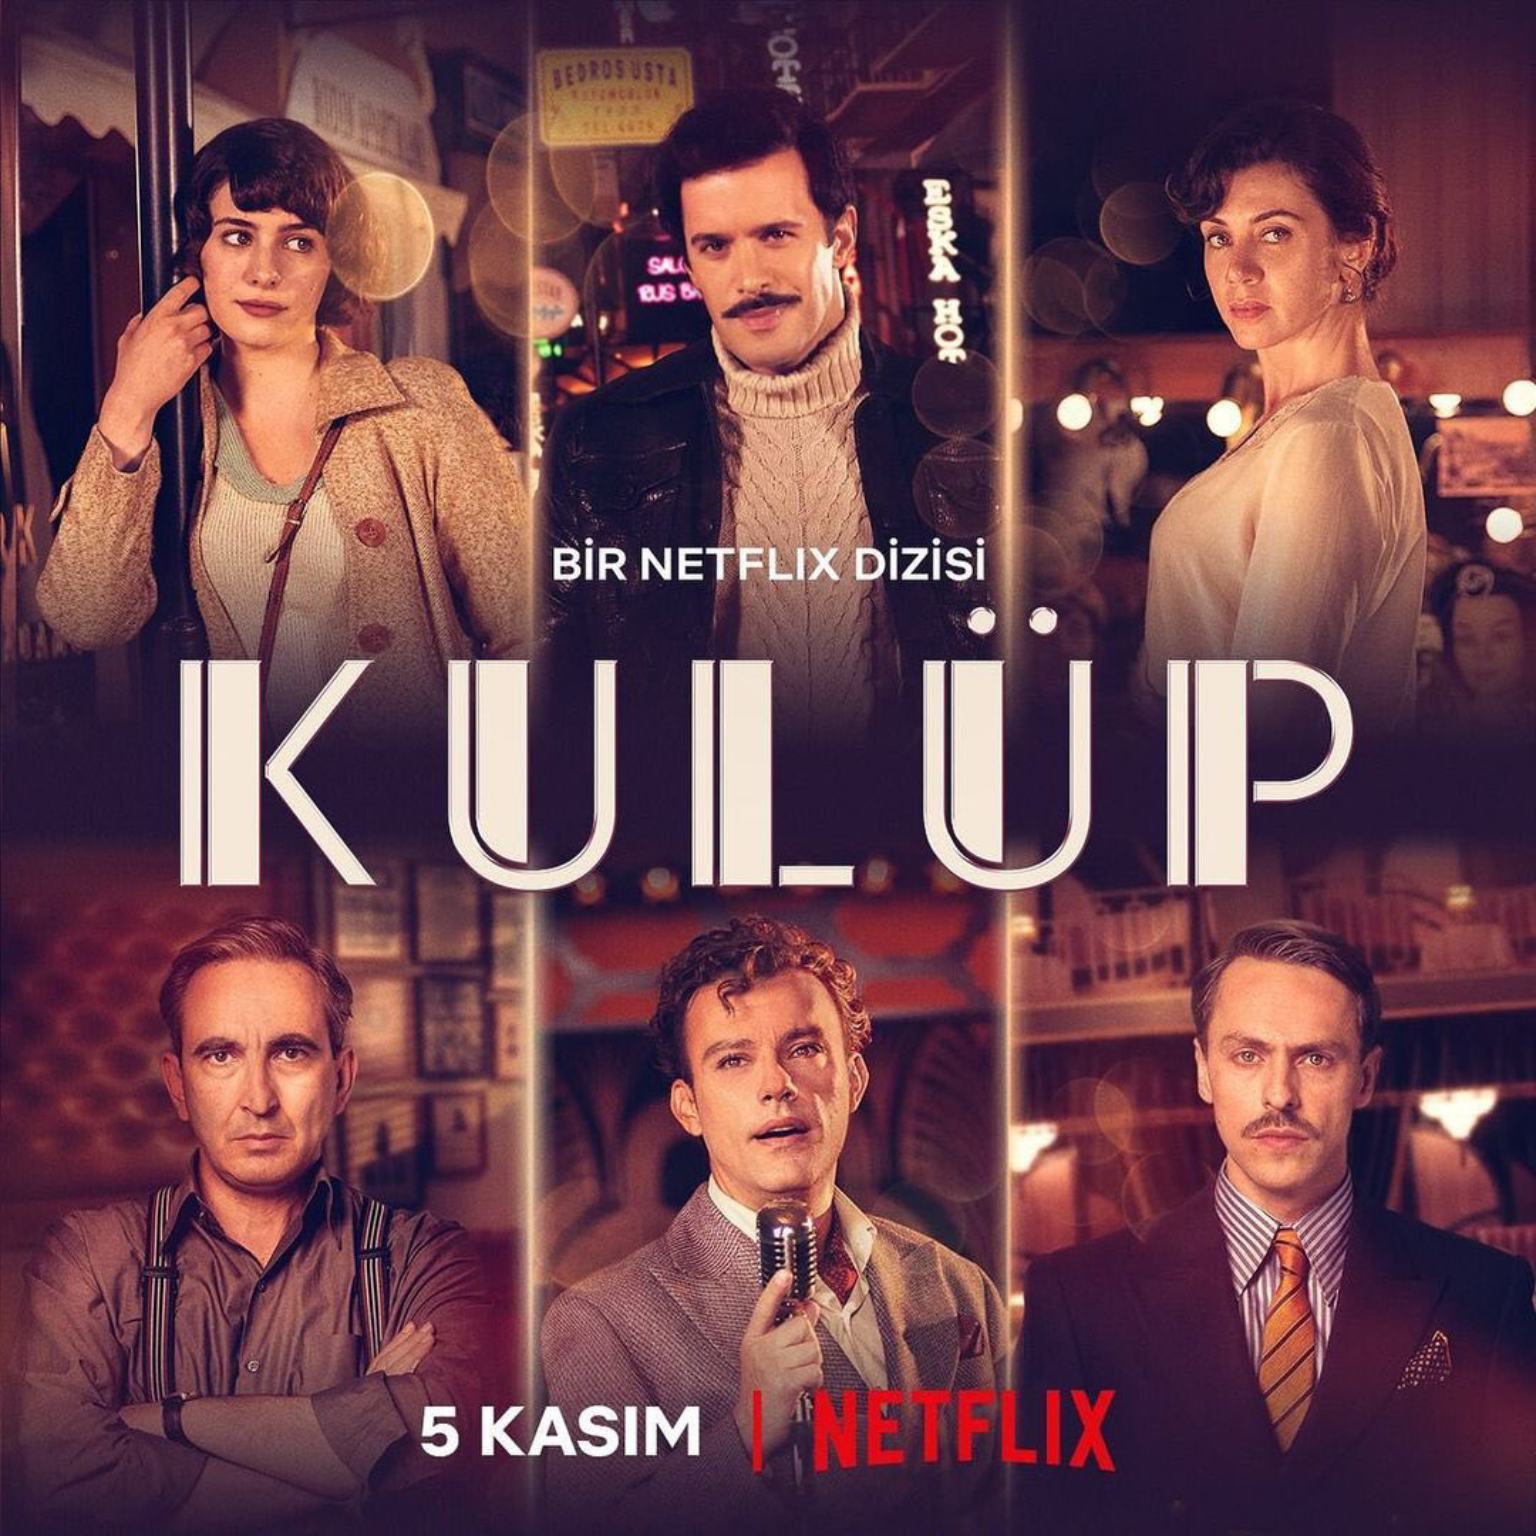 [心得] 愛在俱樂部 Kulüp (雷) Netflix 土耳其時代劇